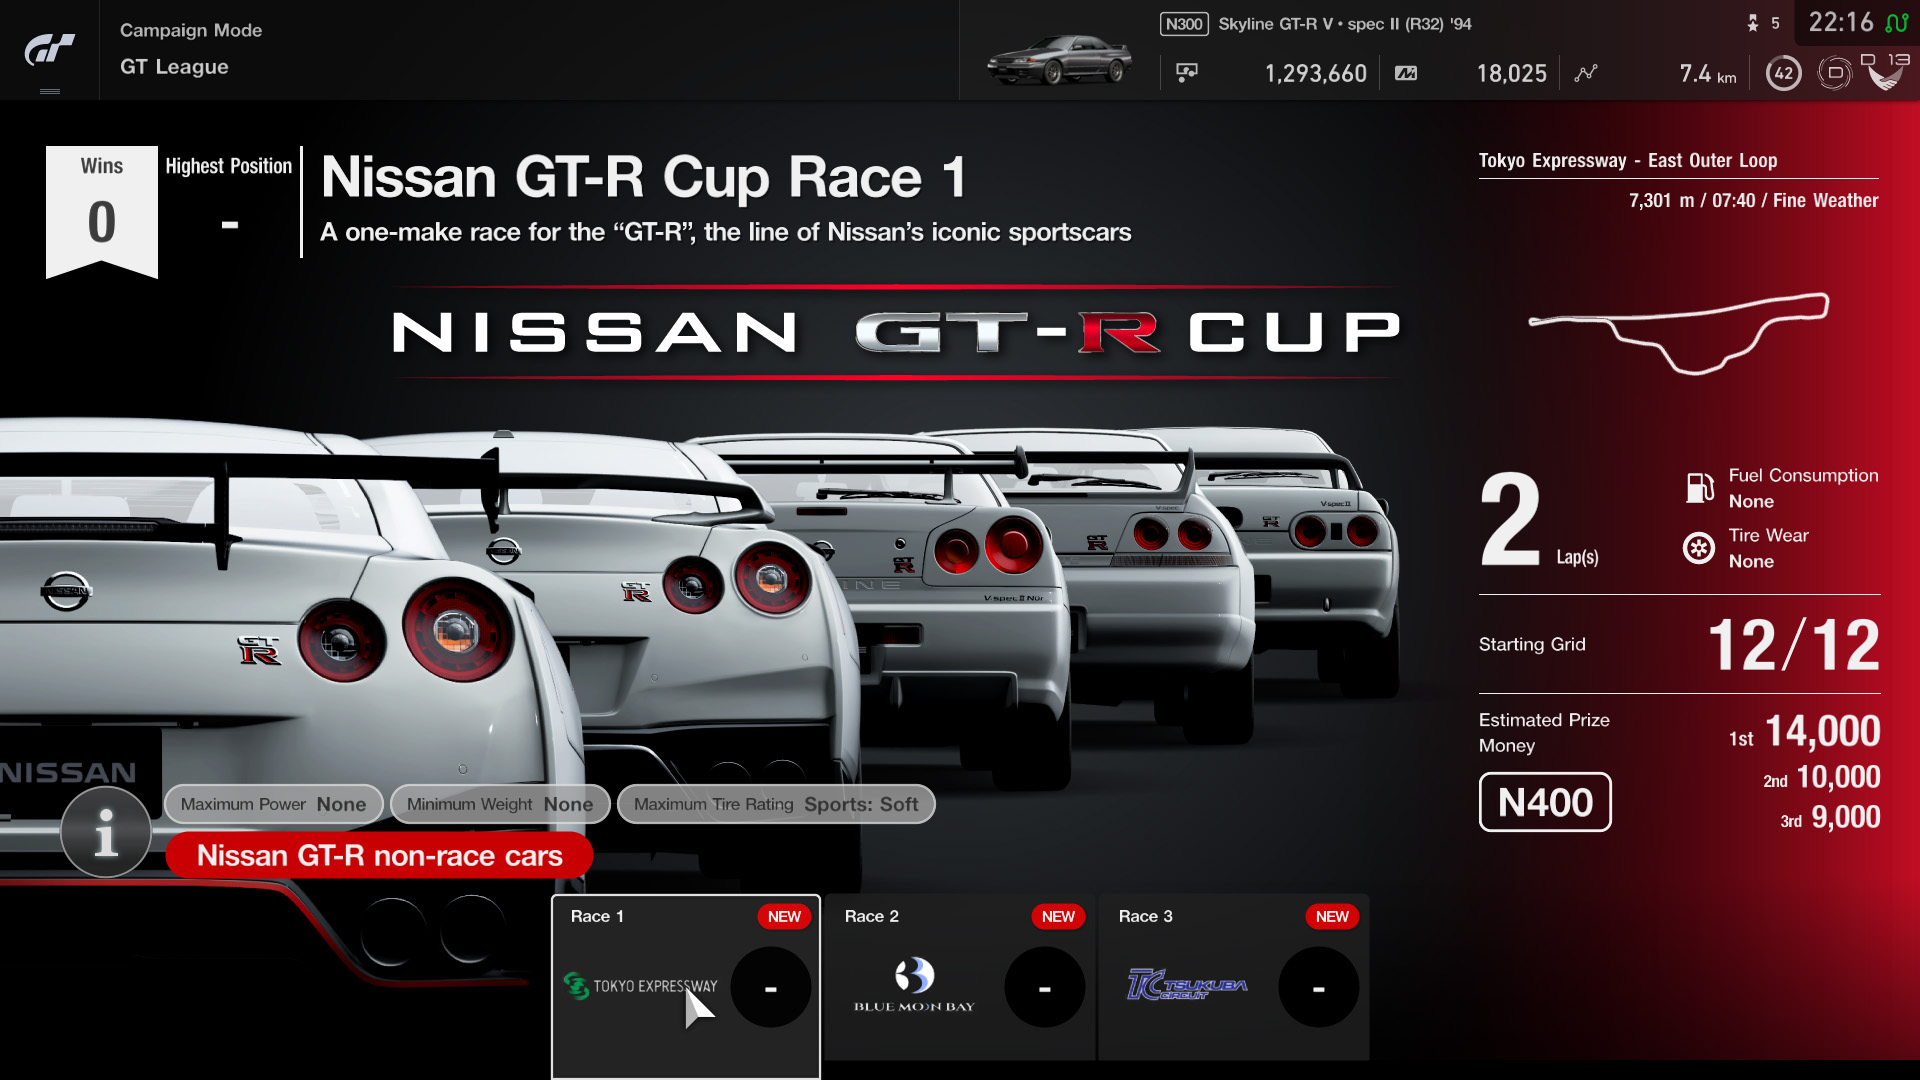 Gran Turismo Sport Update 1.15